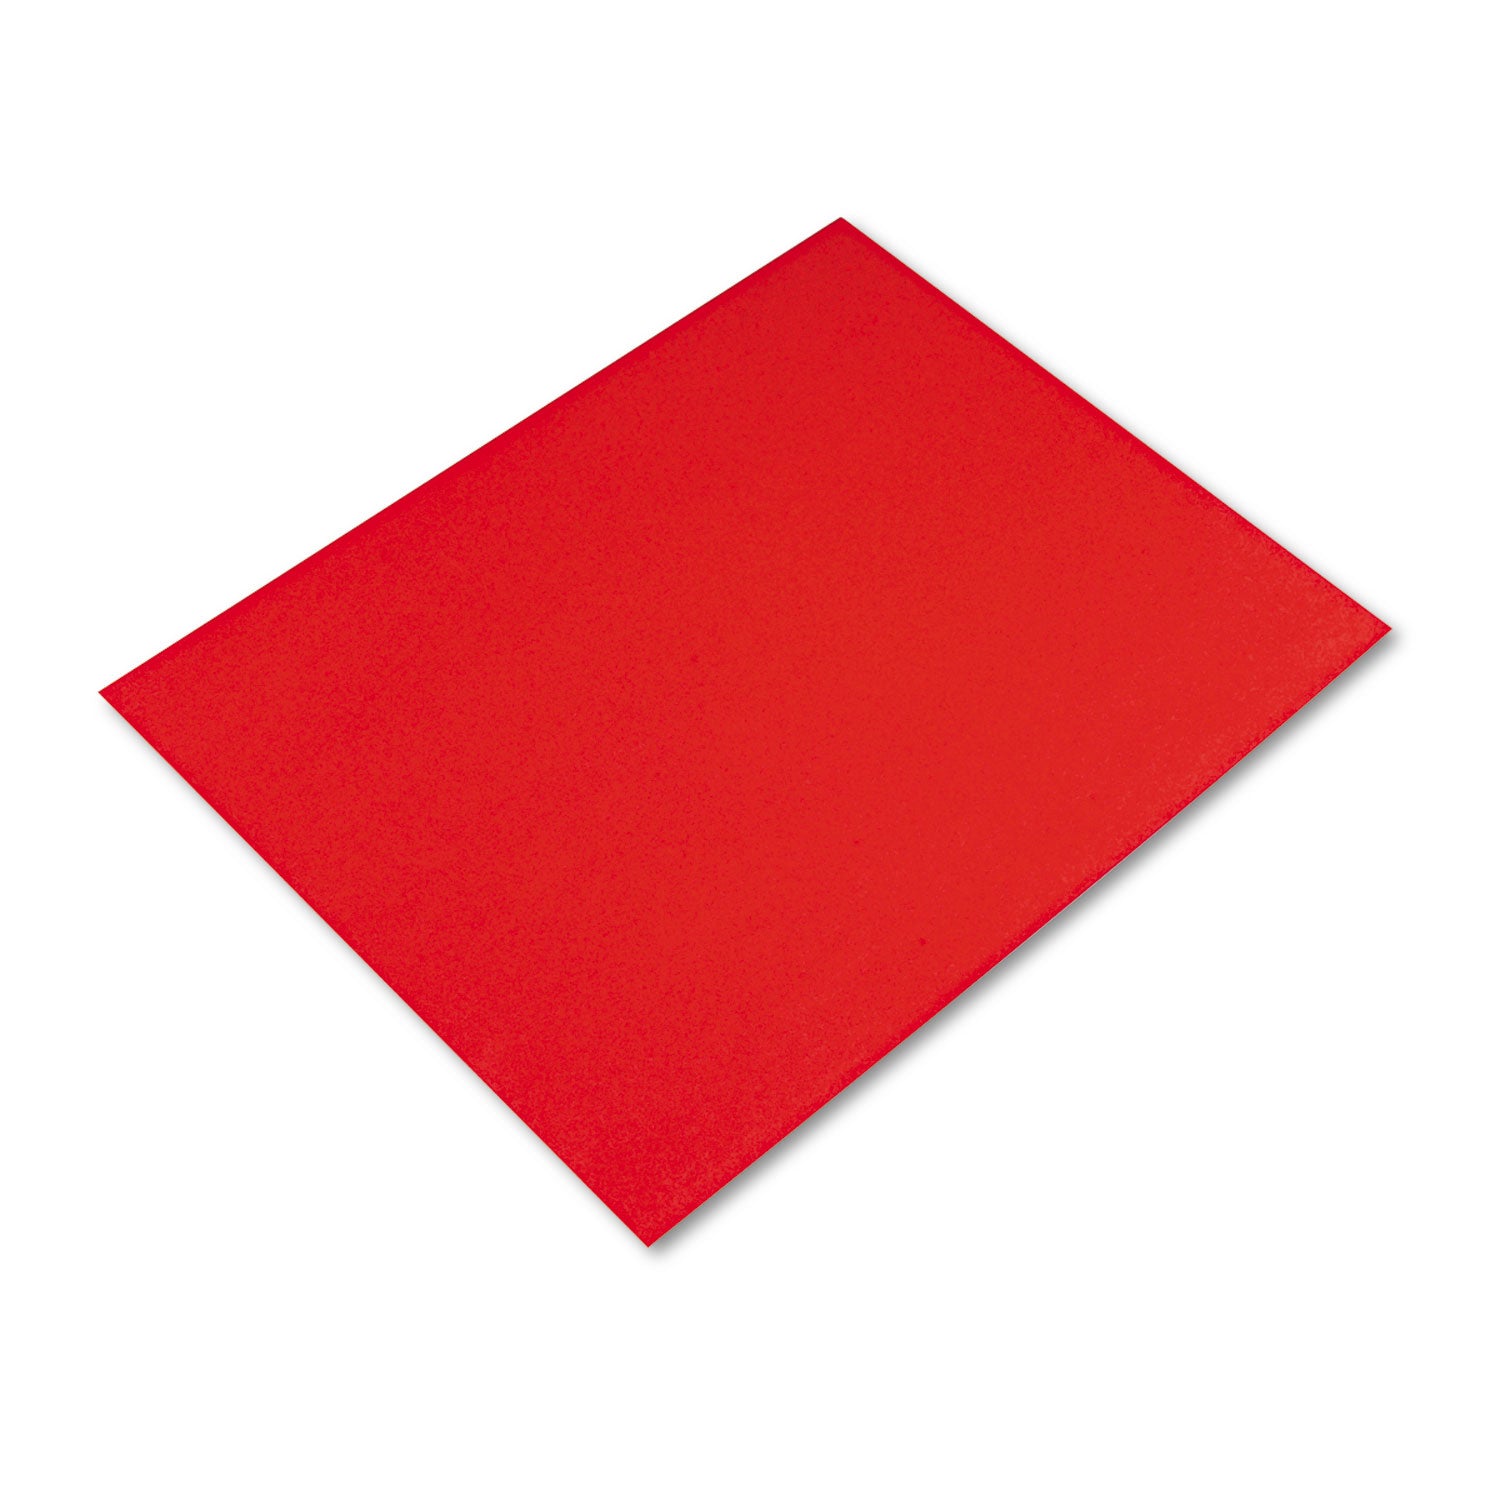 Four-Ply Railroad Board, 22 x 28, Red, 25/Carton - 